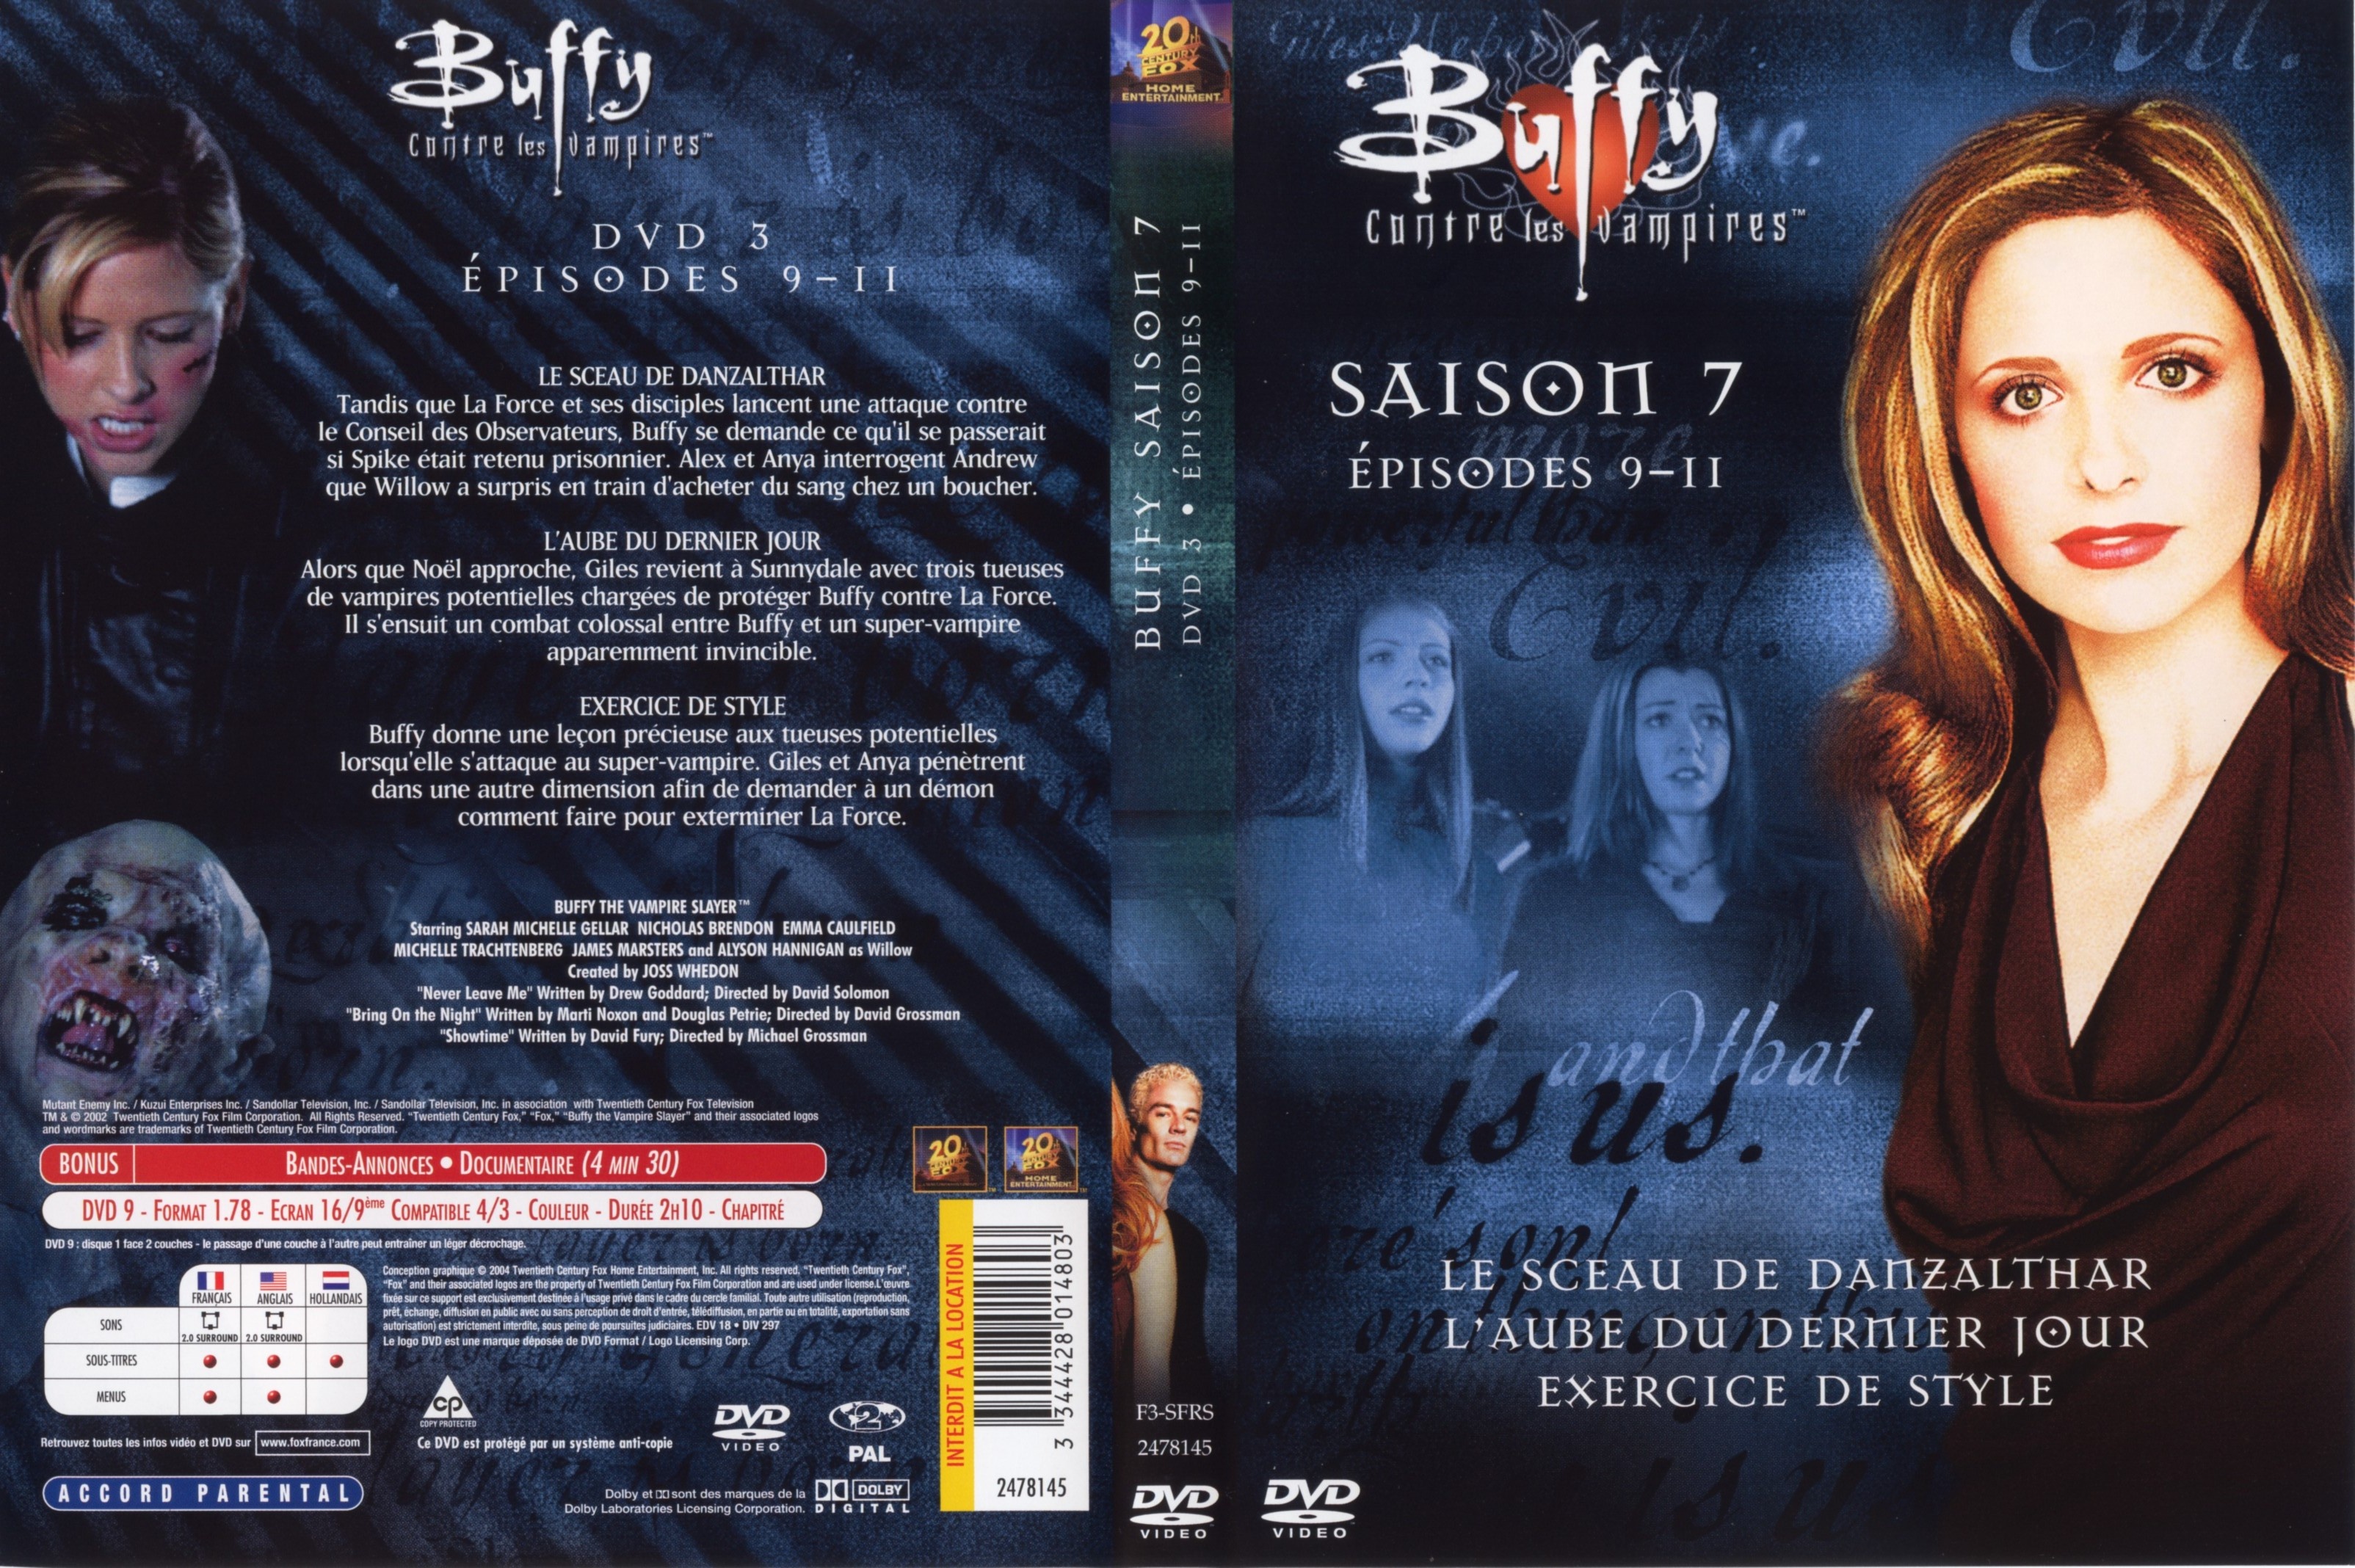 Jaquette DVD Buffy contre les vampires Saison 7 DVD 3